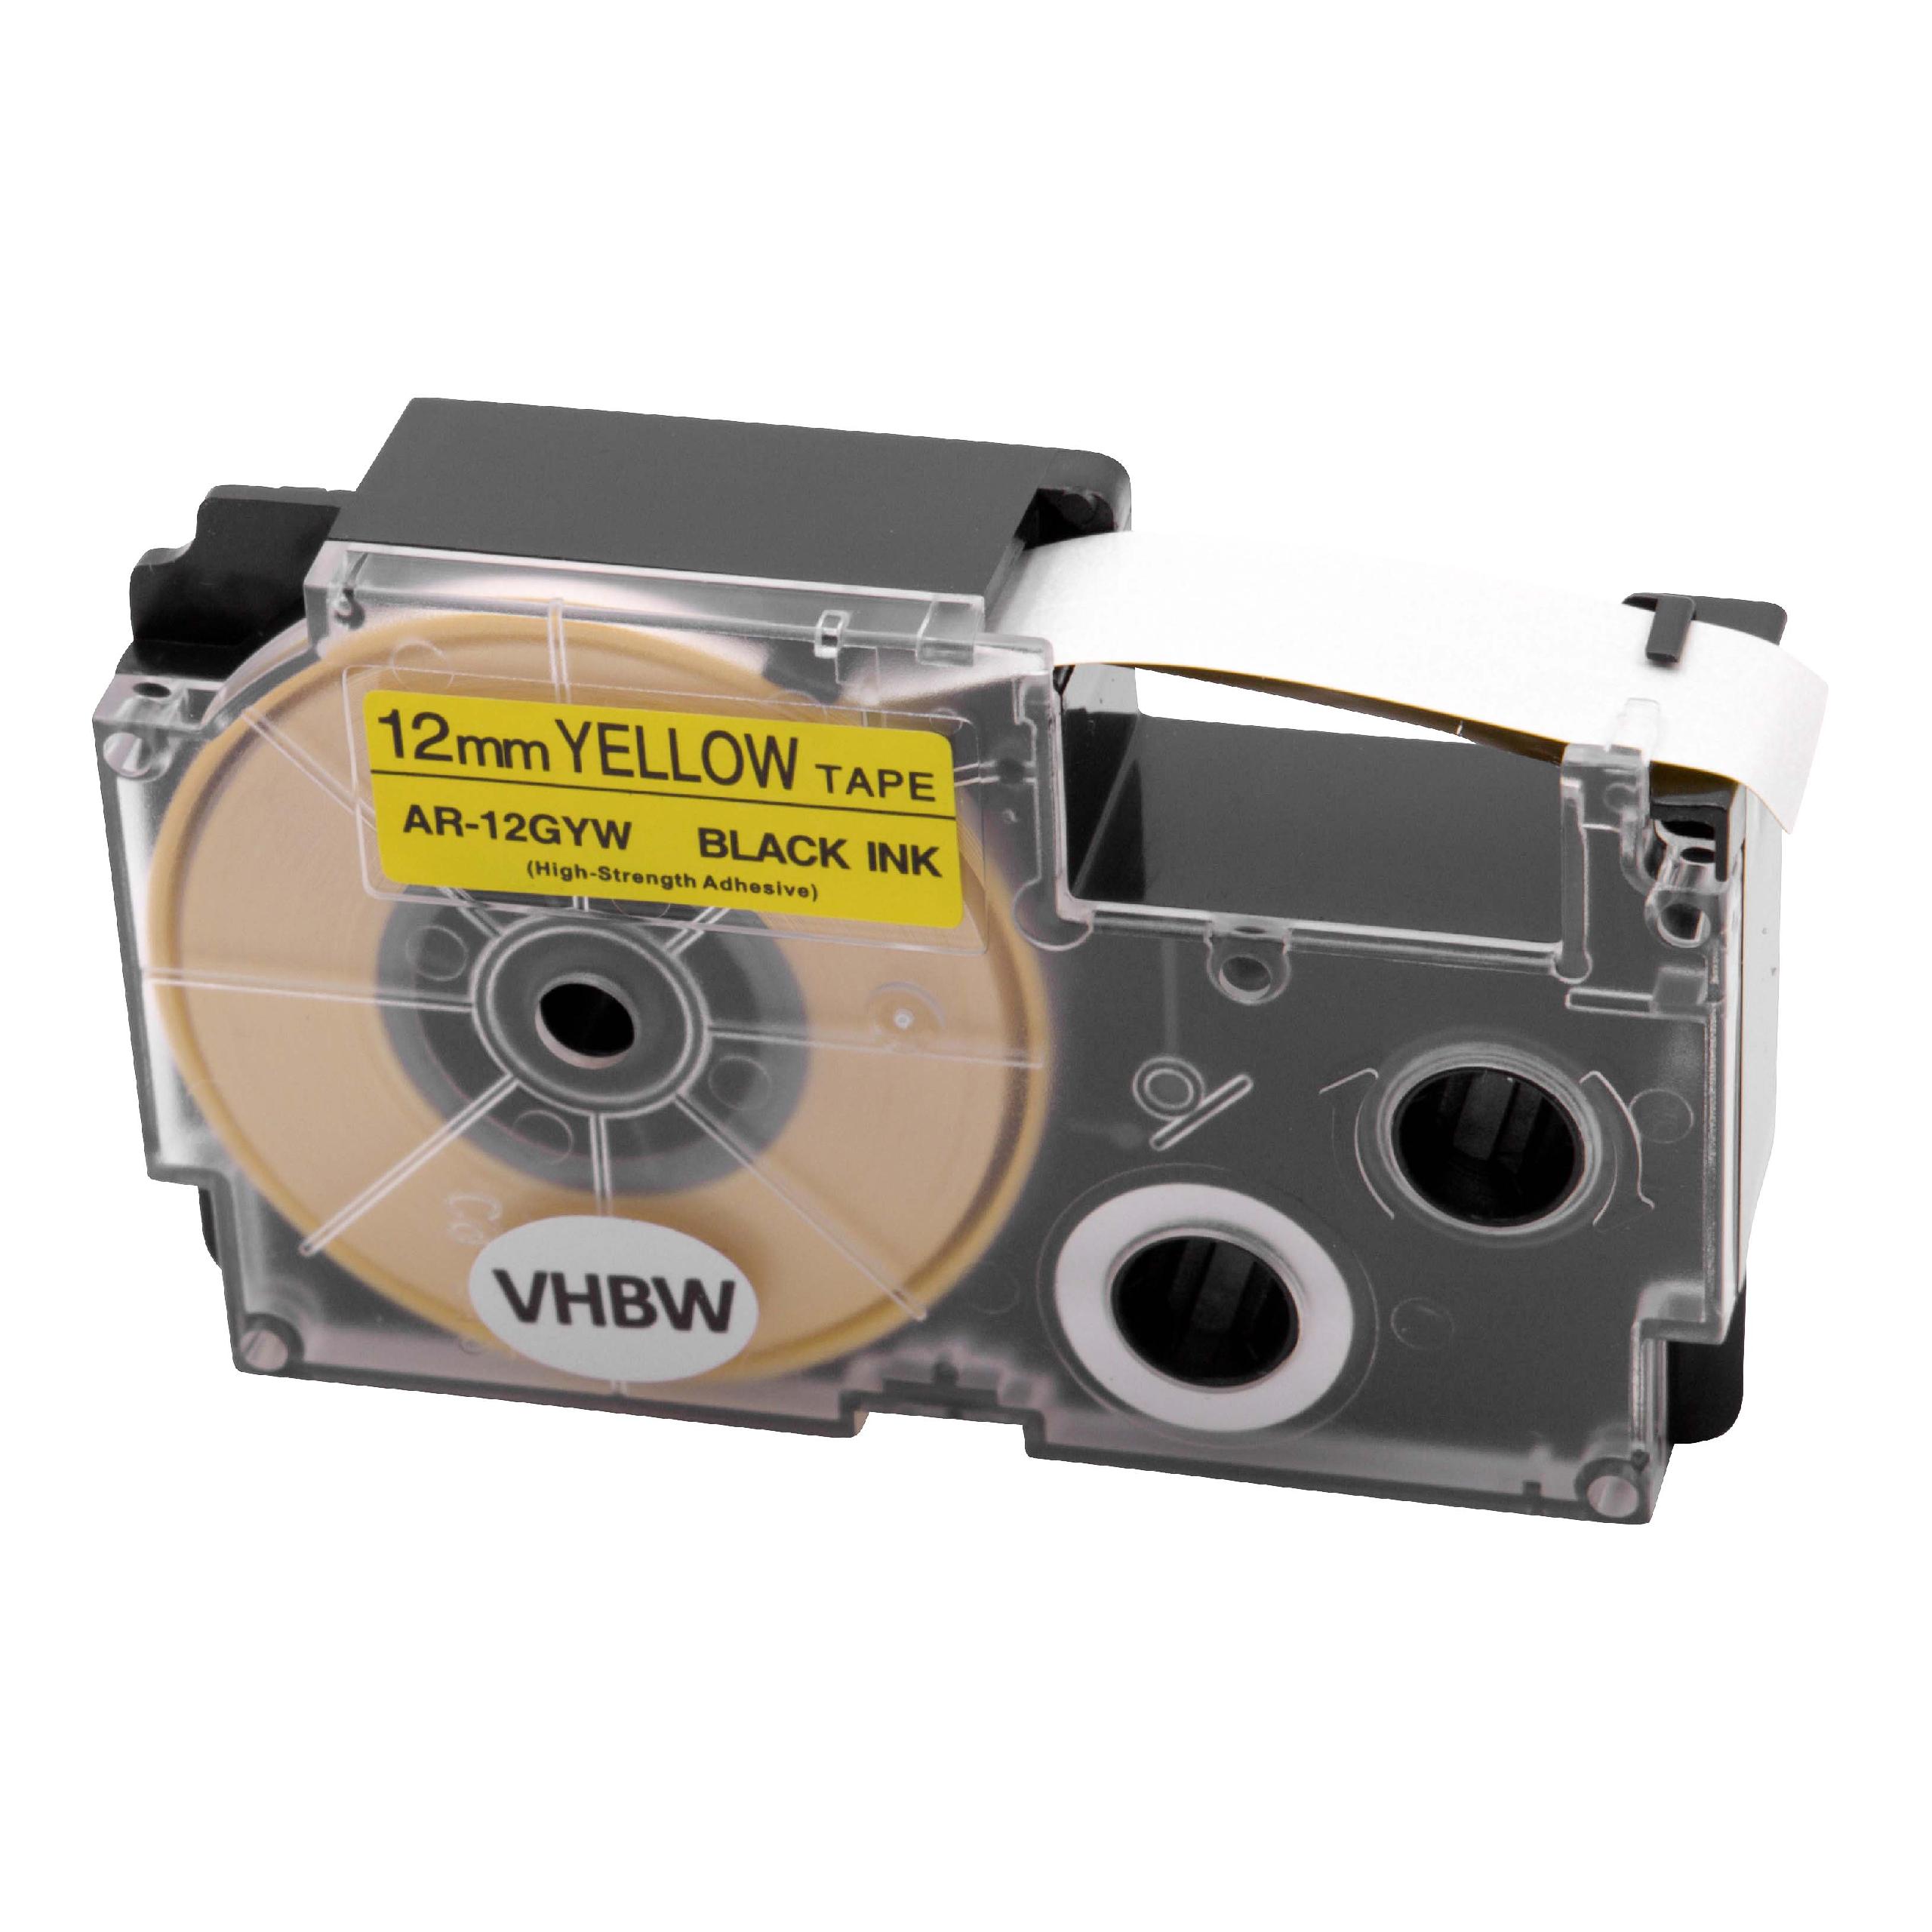 Cassetta nastro sostituisce Casio XR-12GX per etichettatrice Casio 12mm nero su giallo